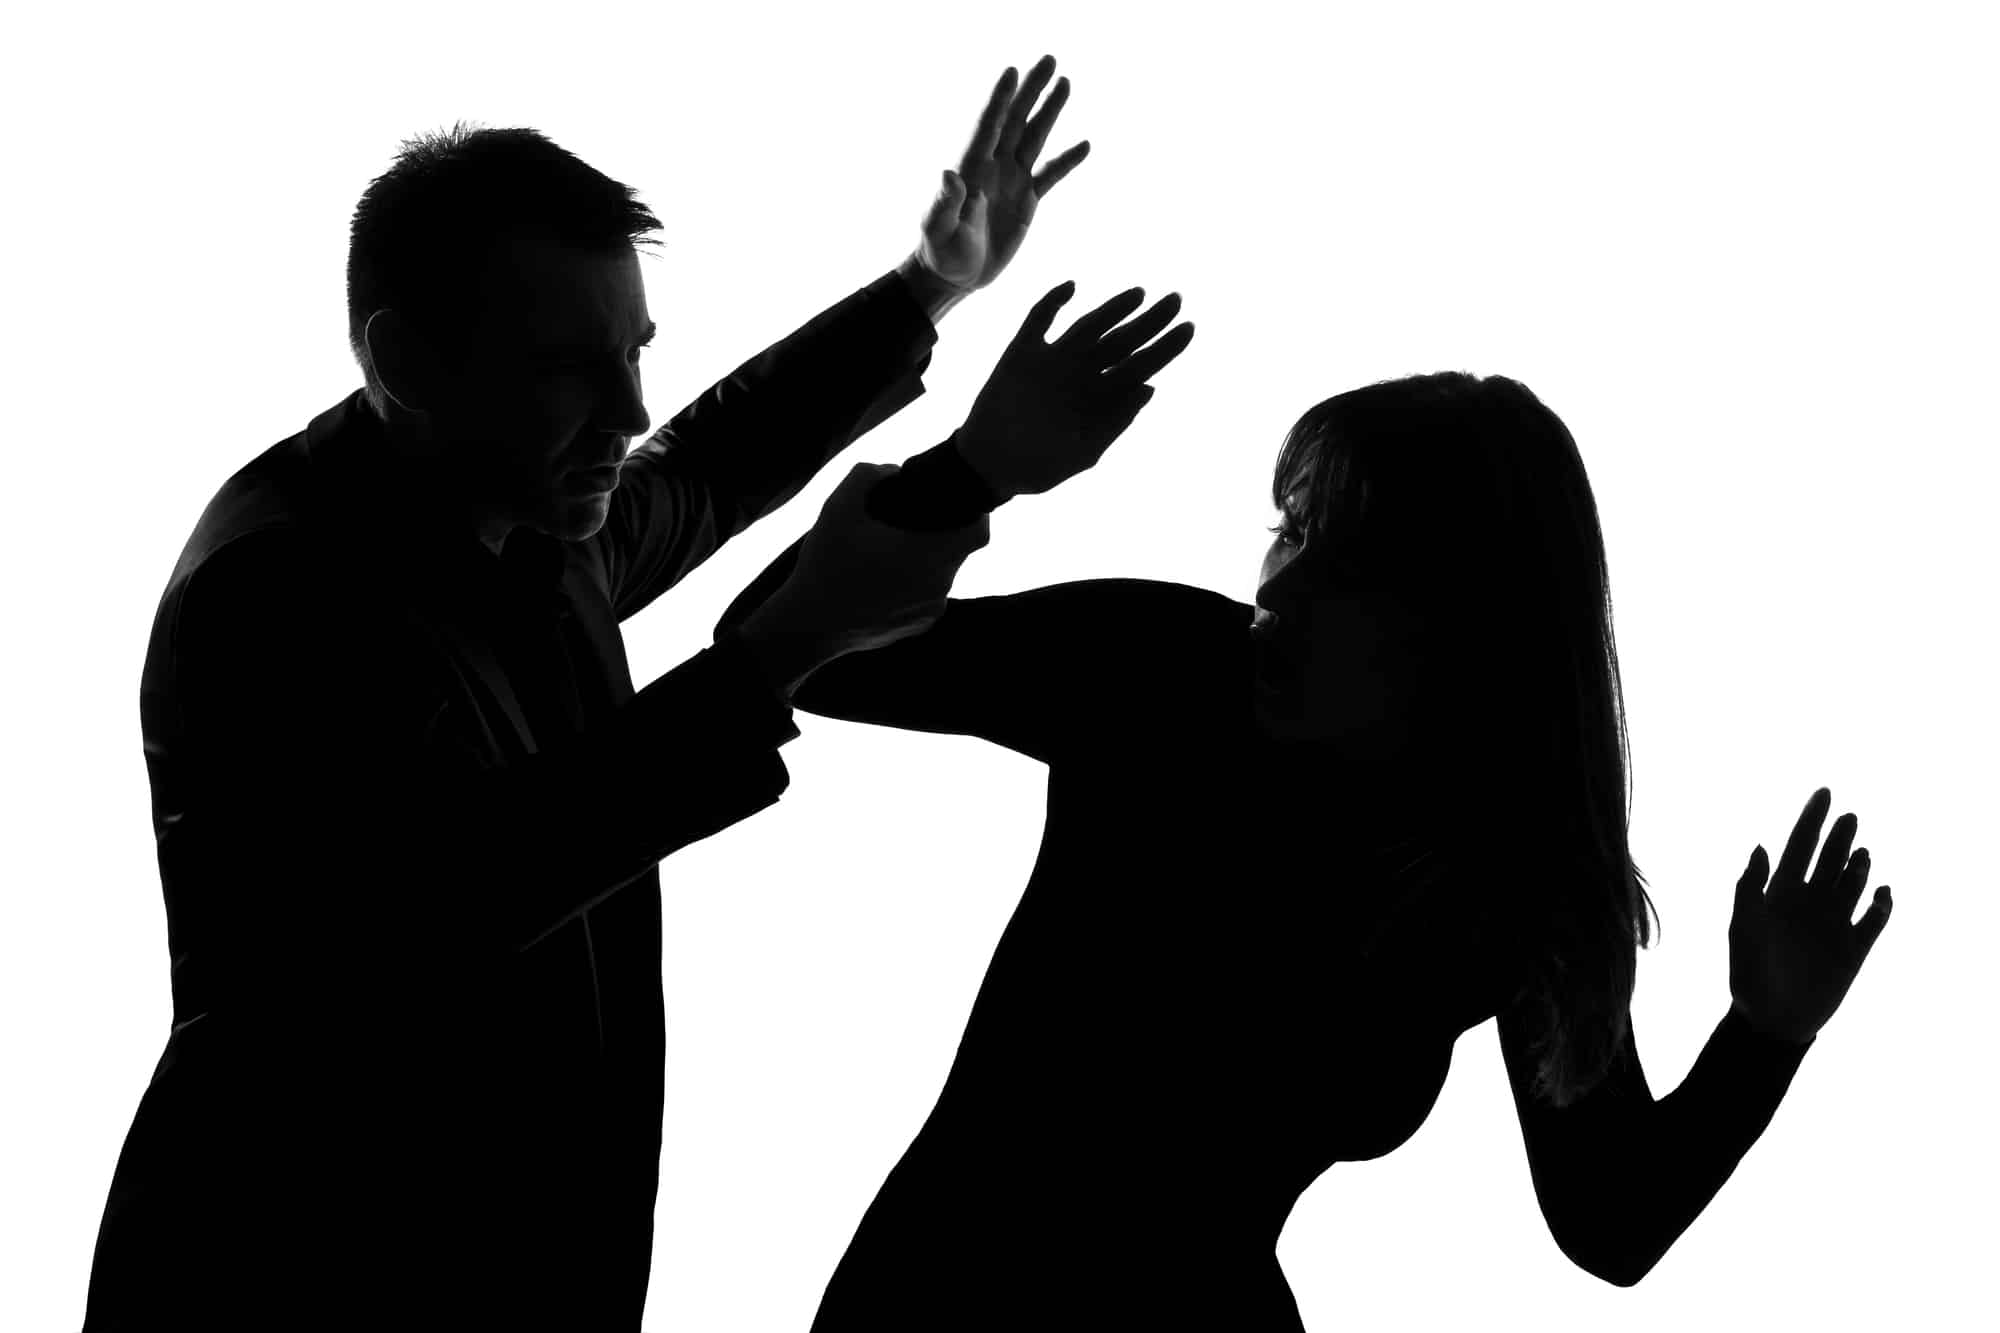 Cómo buscar ayuda legal si eres víctima de violencia doméstica en tiempos de COVID